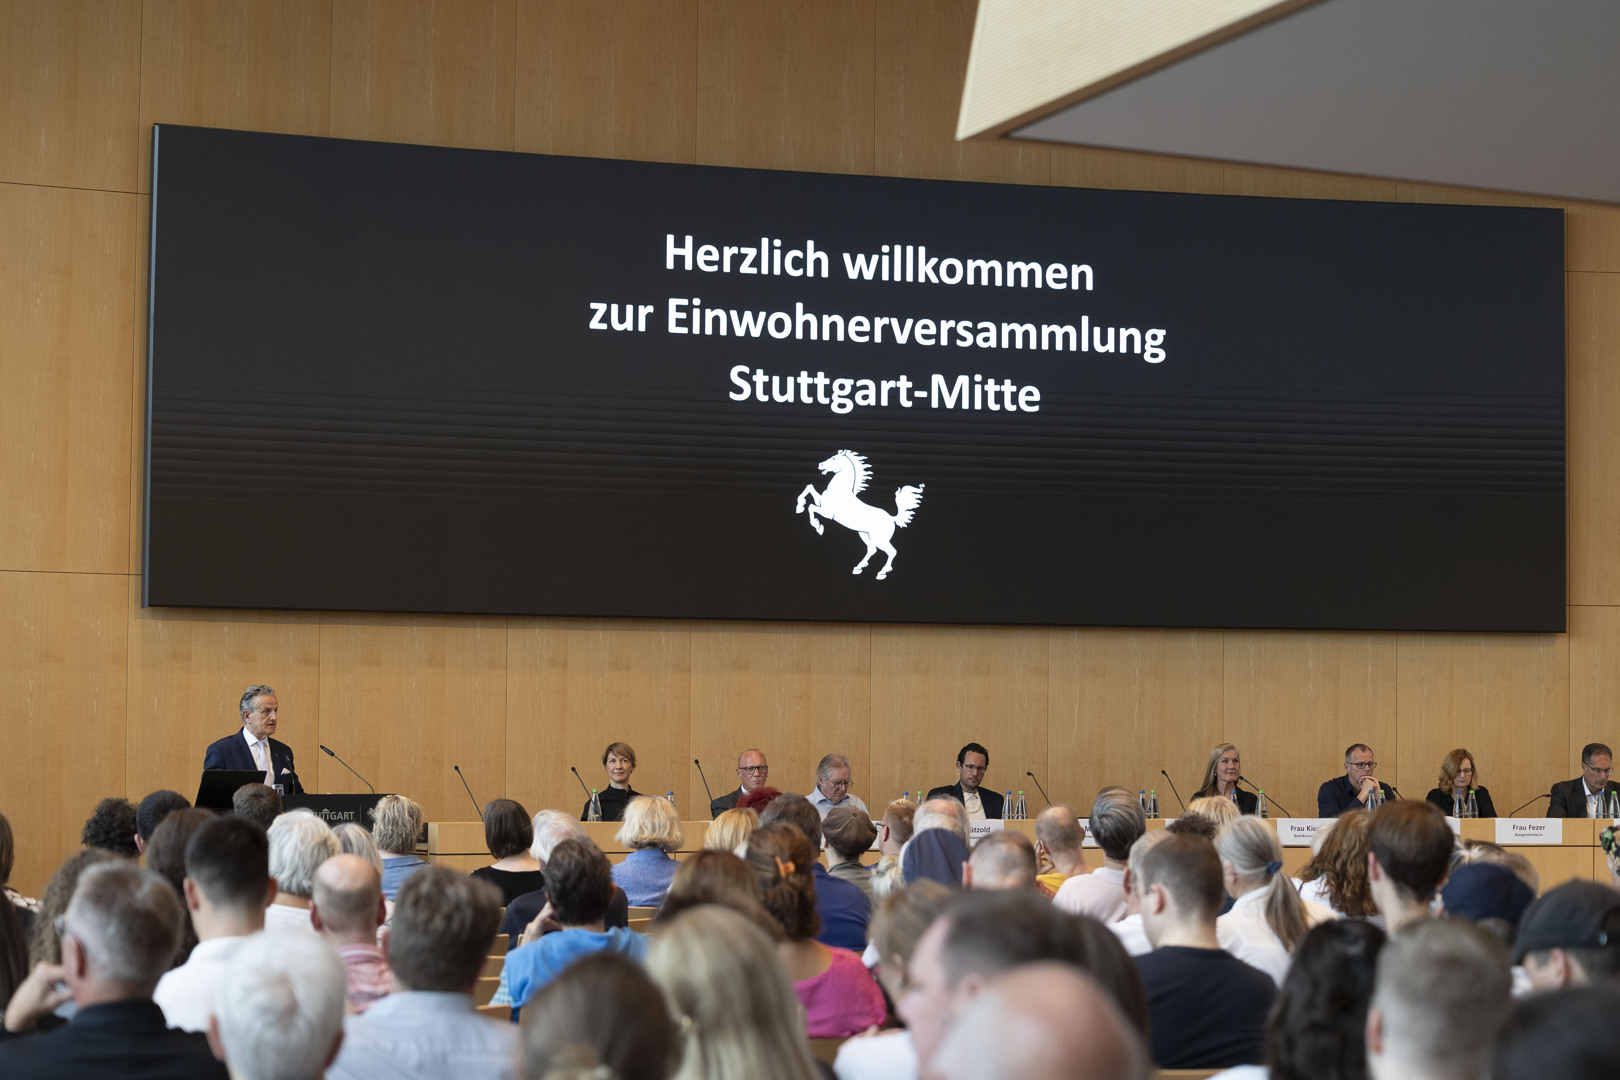 Bei der Einwohnerversammlung Mitte diskutieren etwa 200 Teilnehmende mit der Verwaltungsspitze. Foto: Leif Piechowski/Stadt Stuttgart